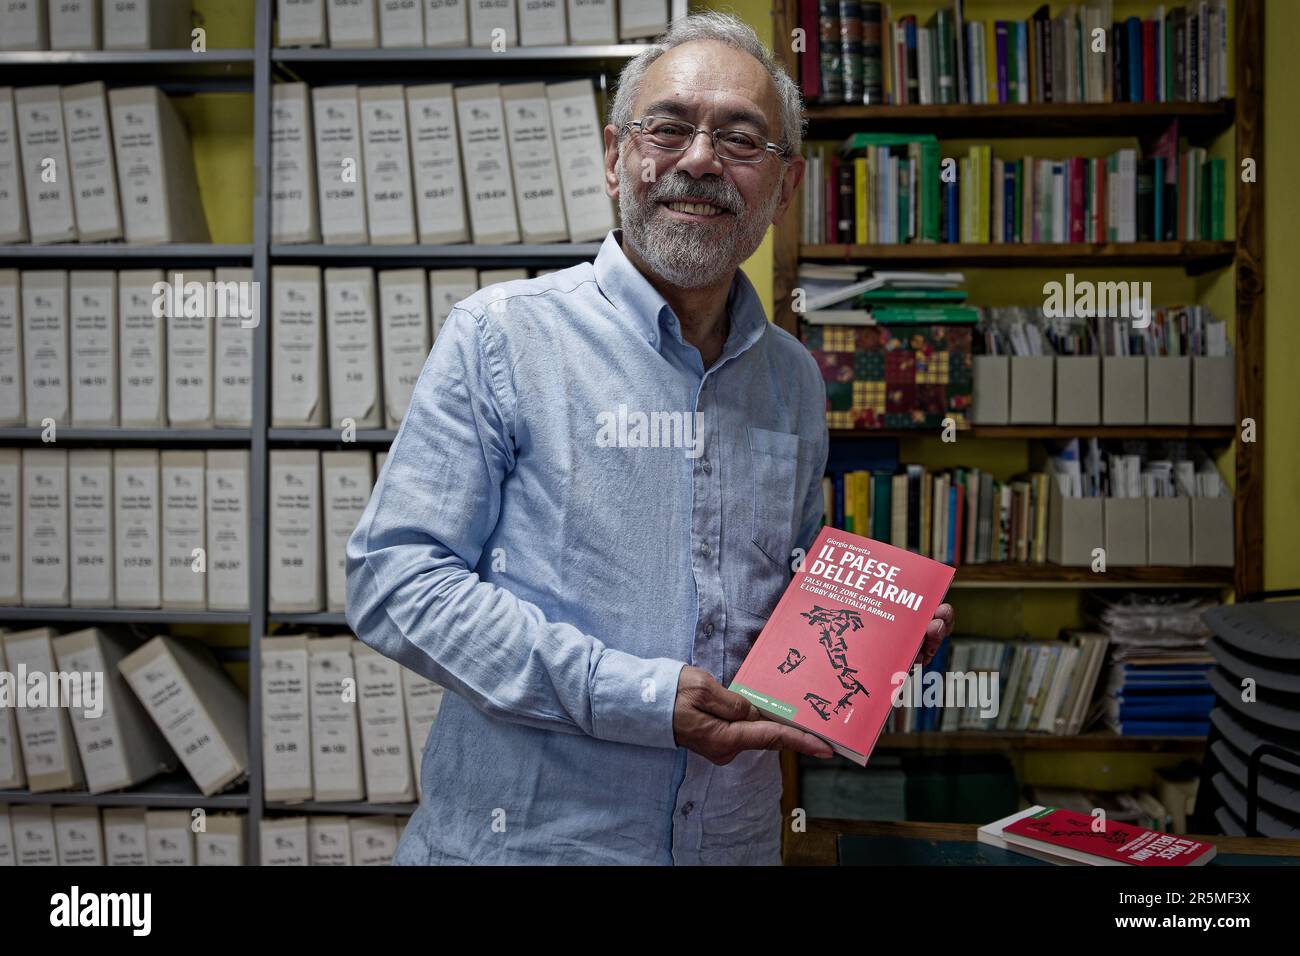 Turin, Italy. 11 May 2023. Giorgio Beretta presents his new book “Il paese delle armi” at the Centro Studi Sereno Regis. Credits: MLBARIONA/Alamy Stoc Stock Photo